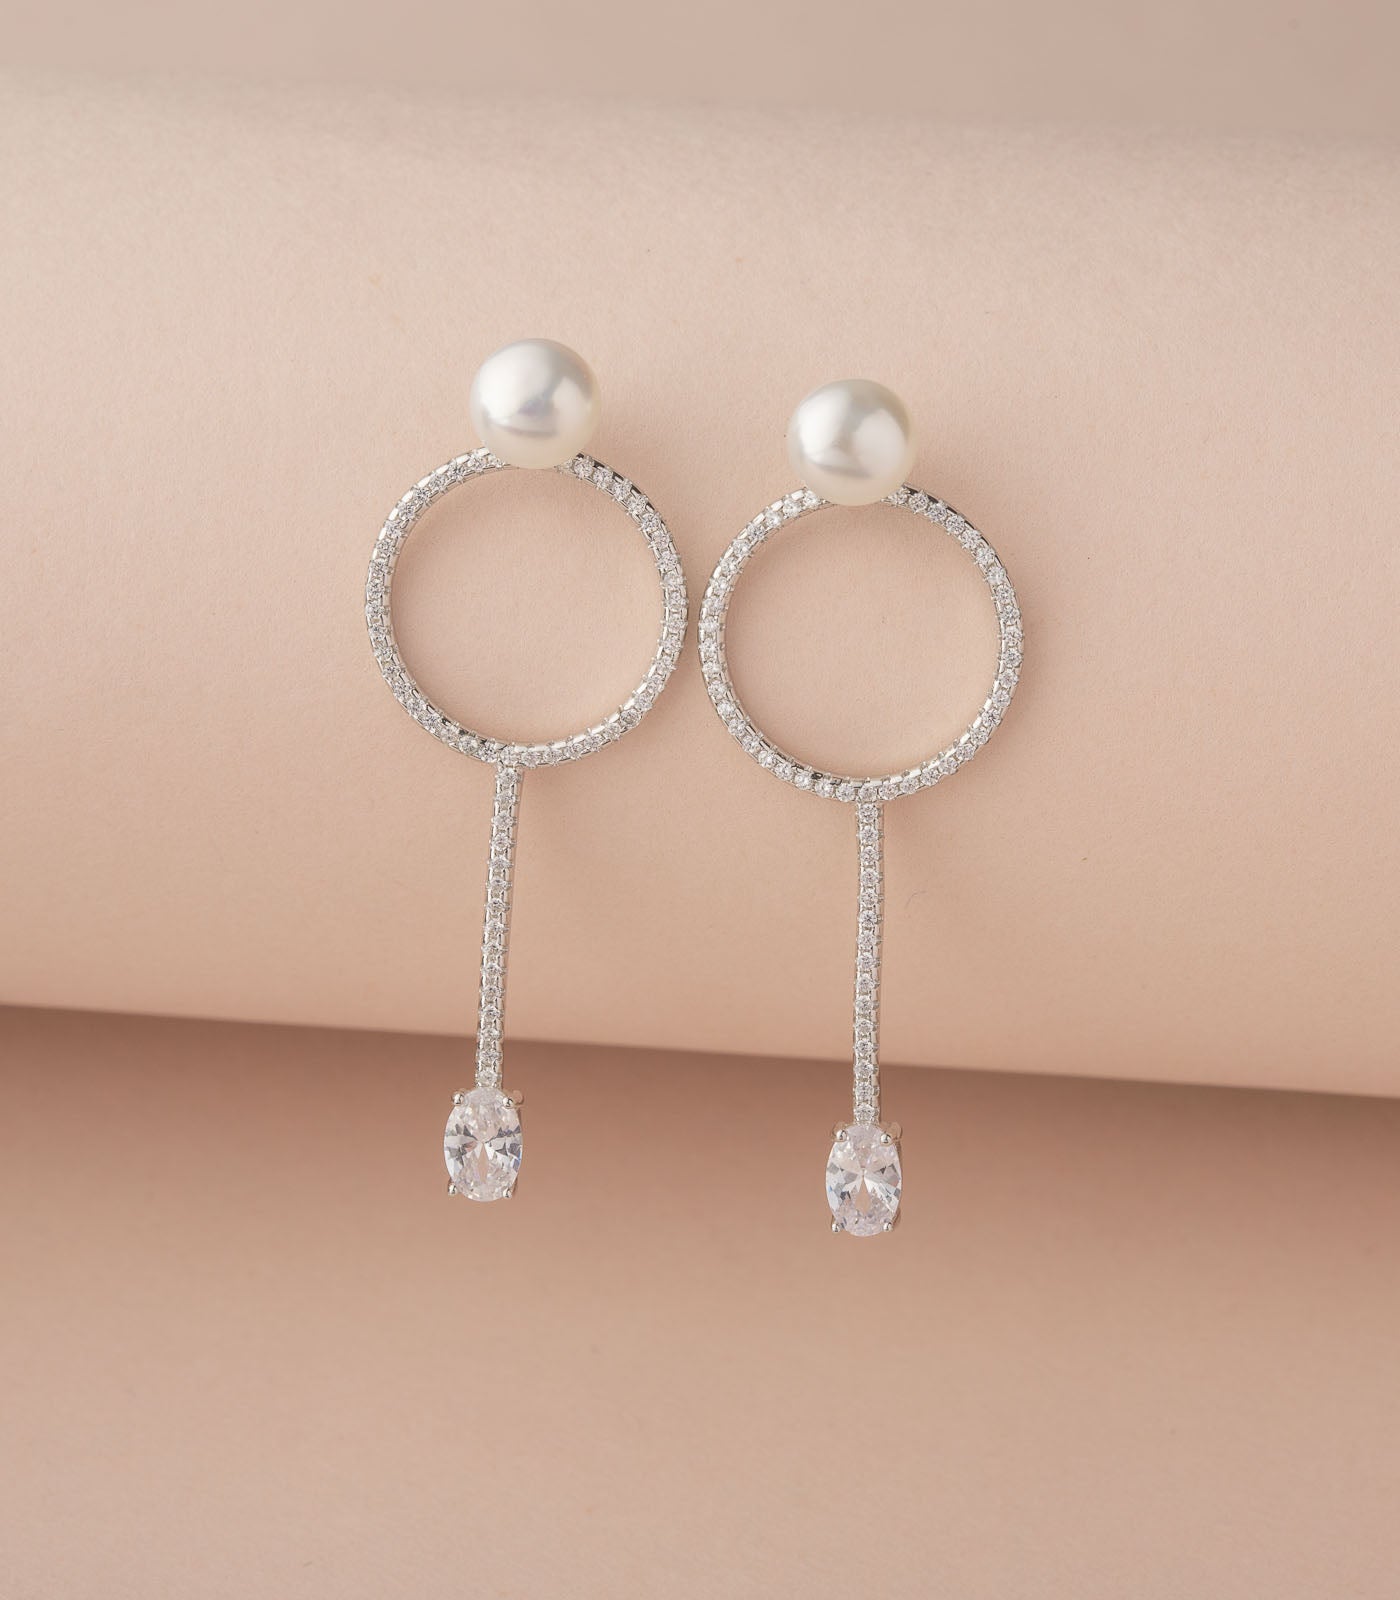 Love Struck Silver Pearl Earrings